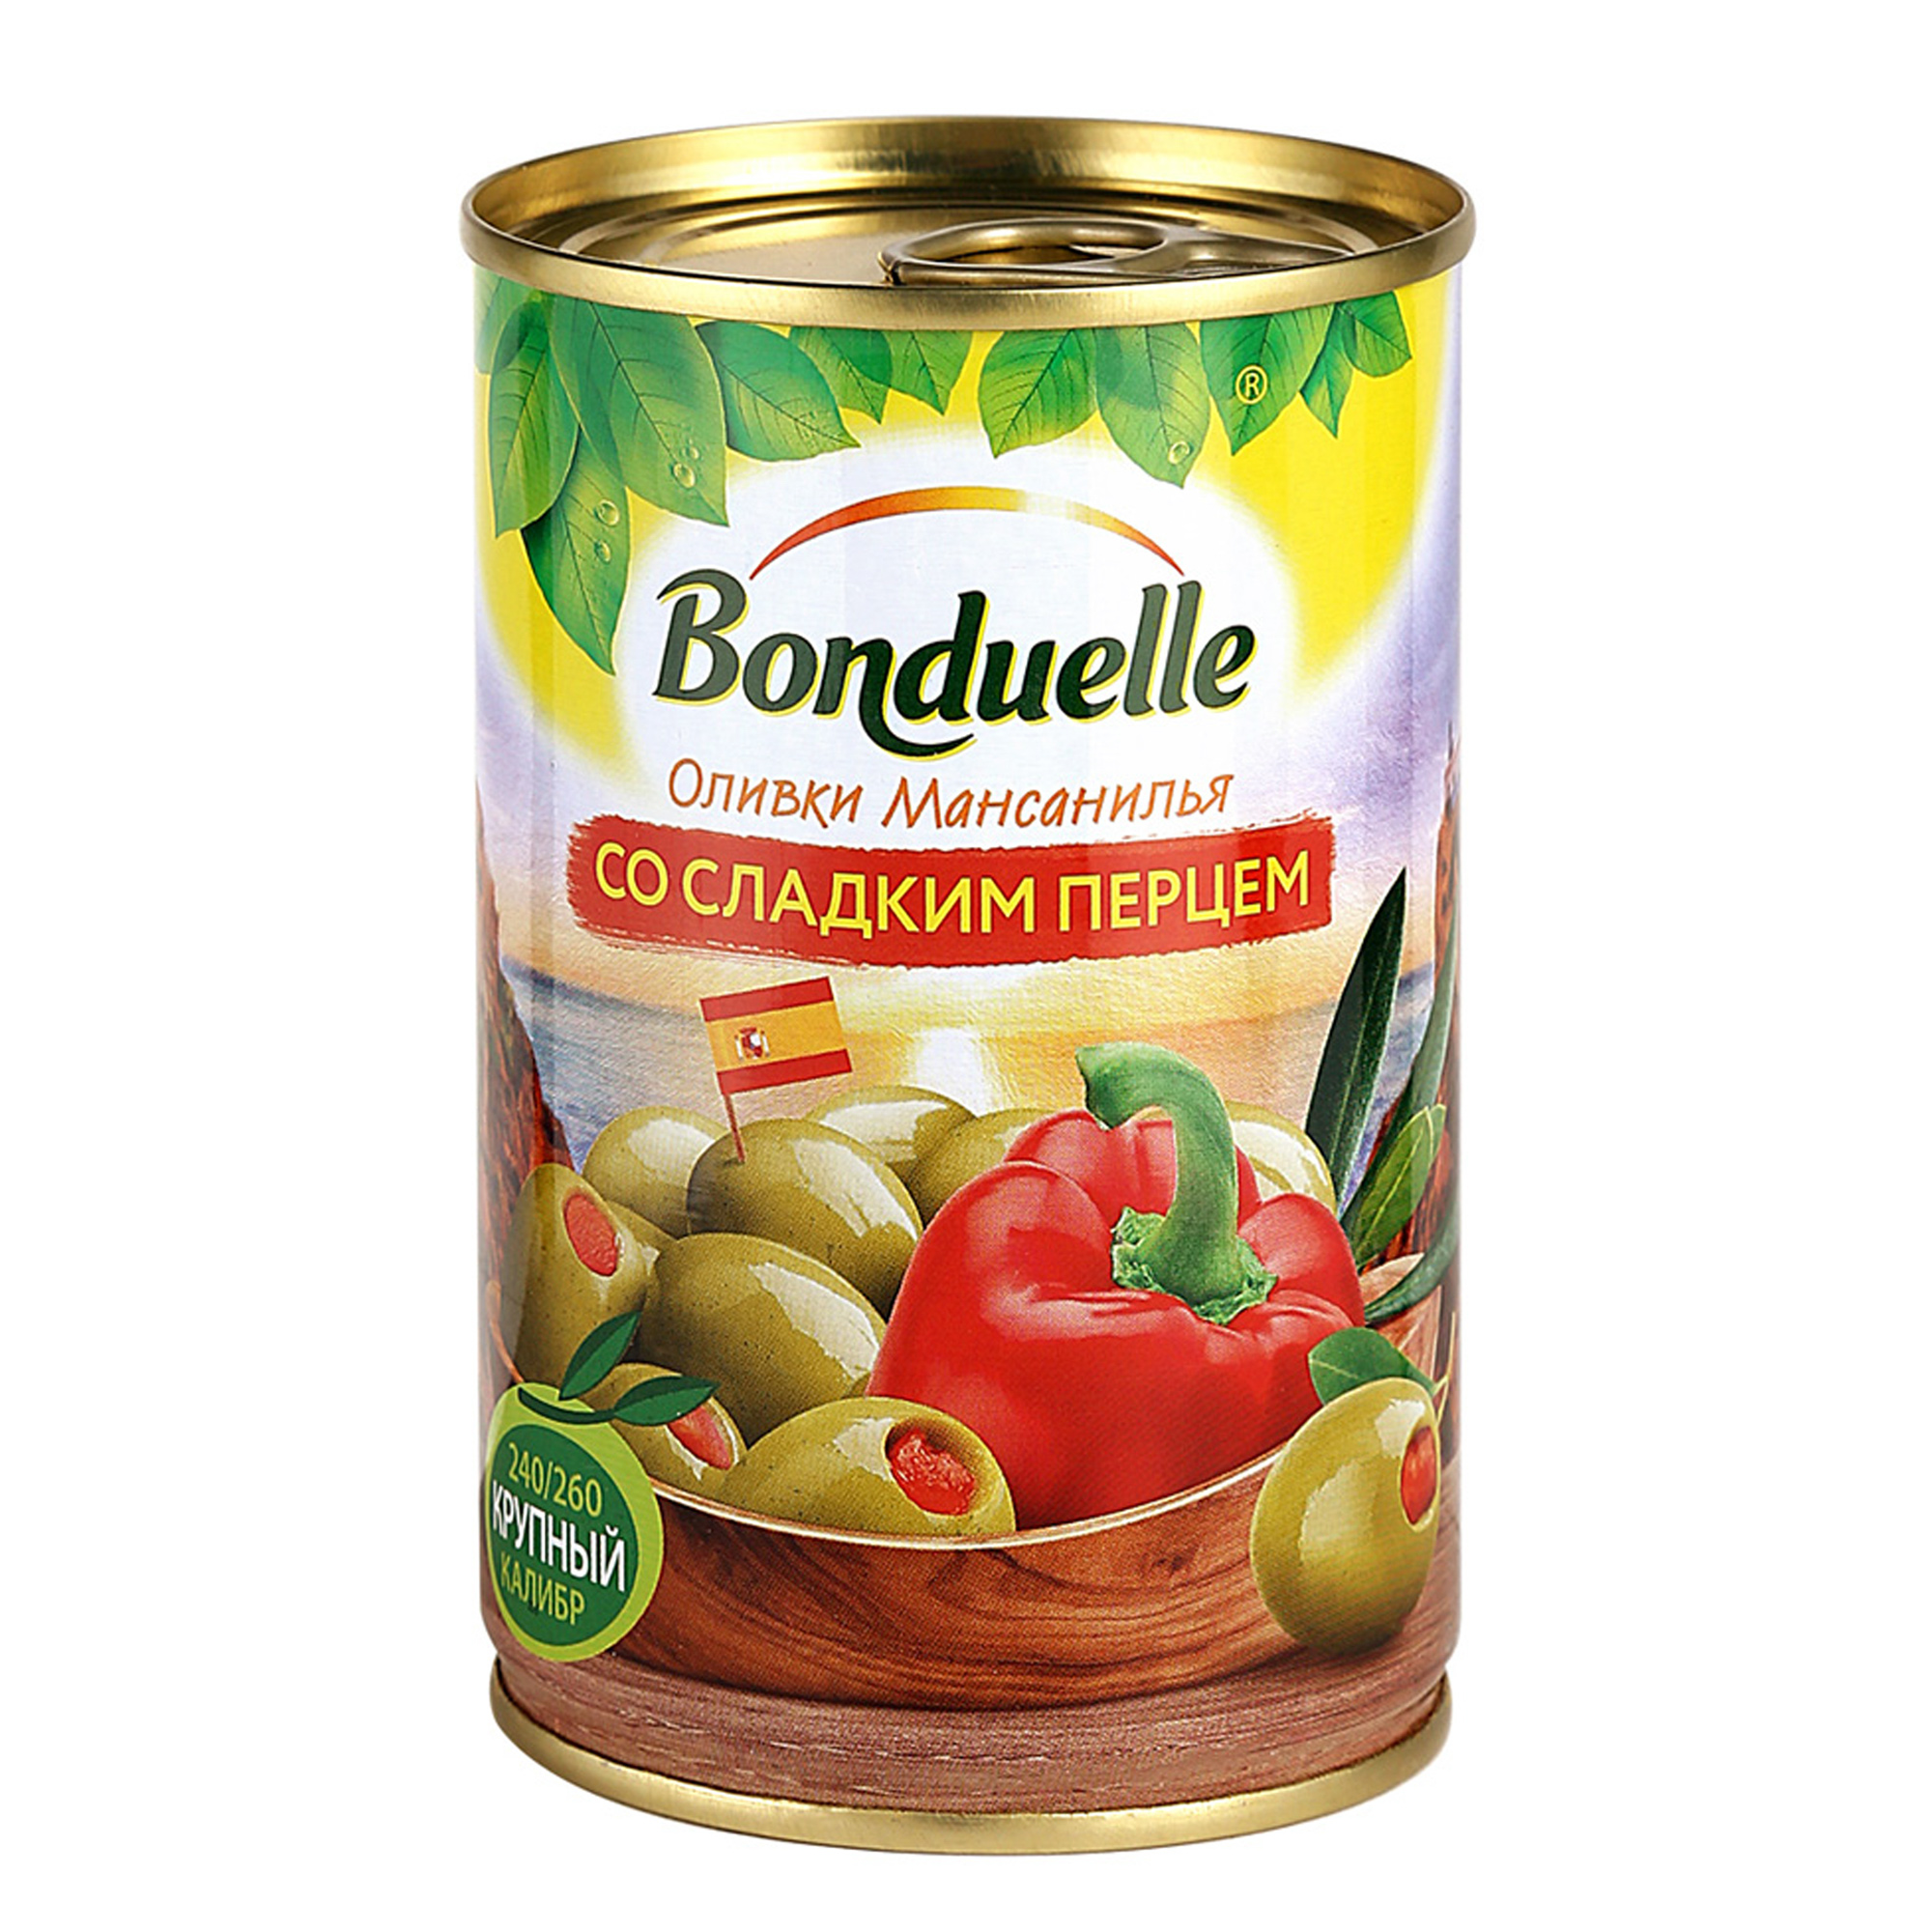 Оливки Bonduelle со сладким перцем 314 г